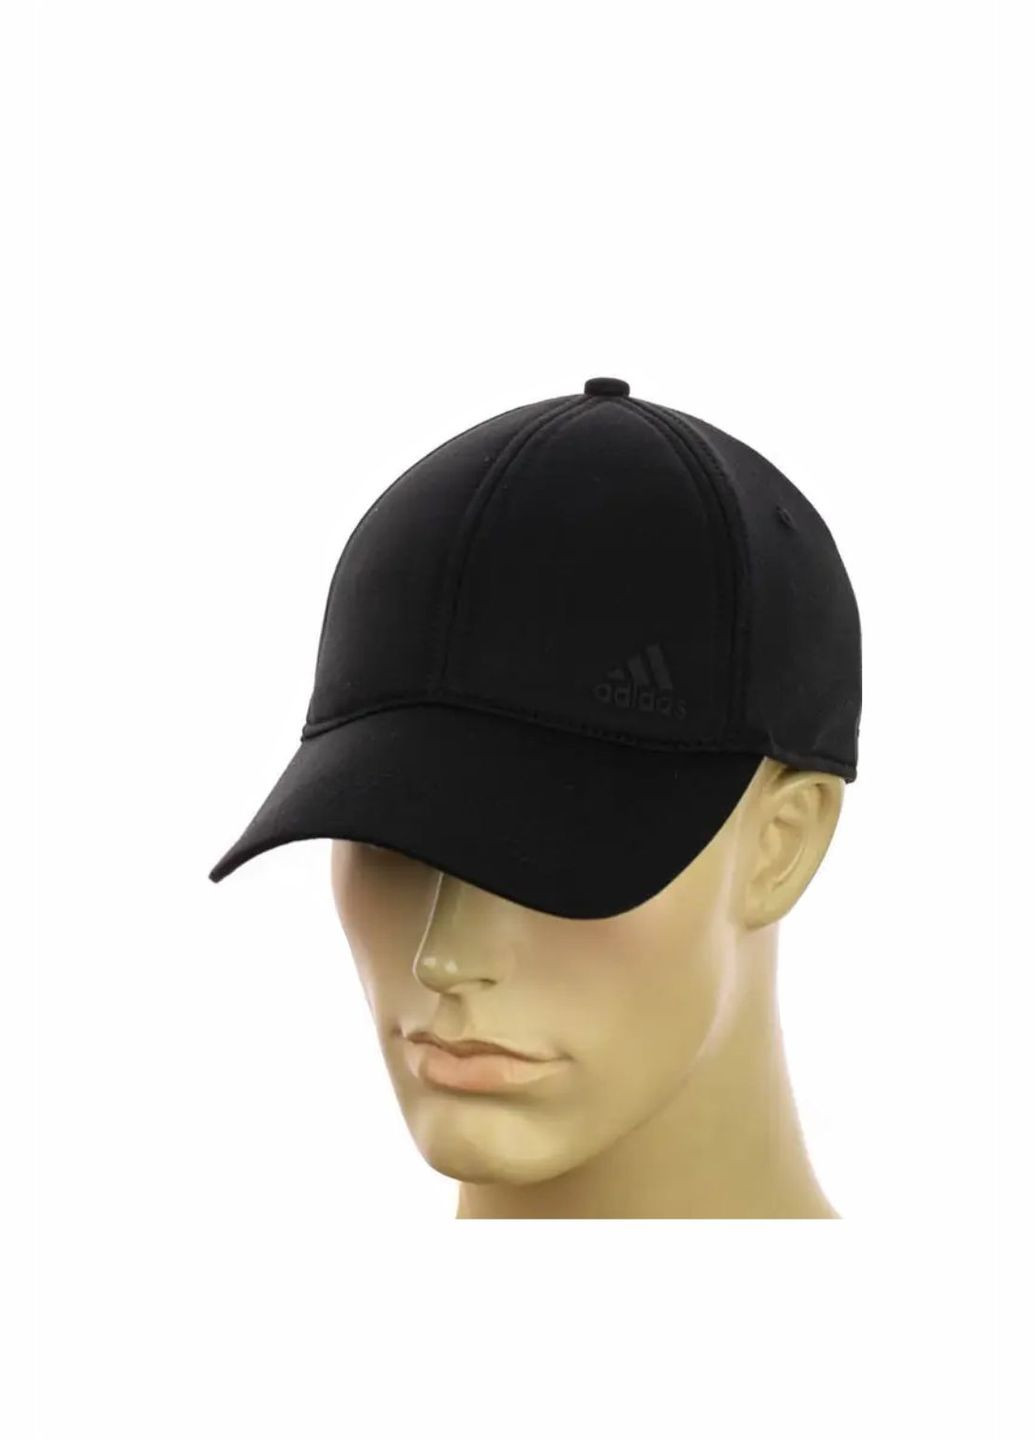 Трикотажная мужская кепка на резинке Adidas / Адидас No Brand чоловіча кепка закрита (278279311)